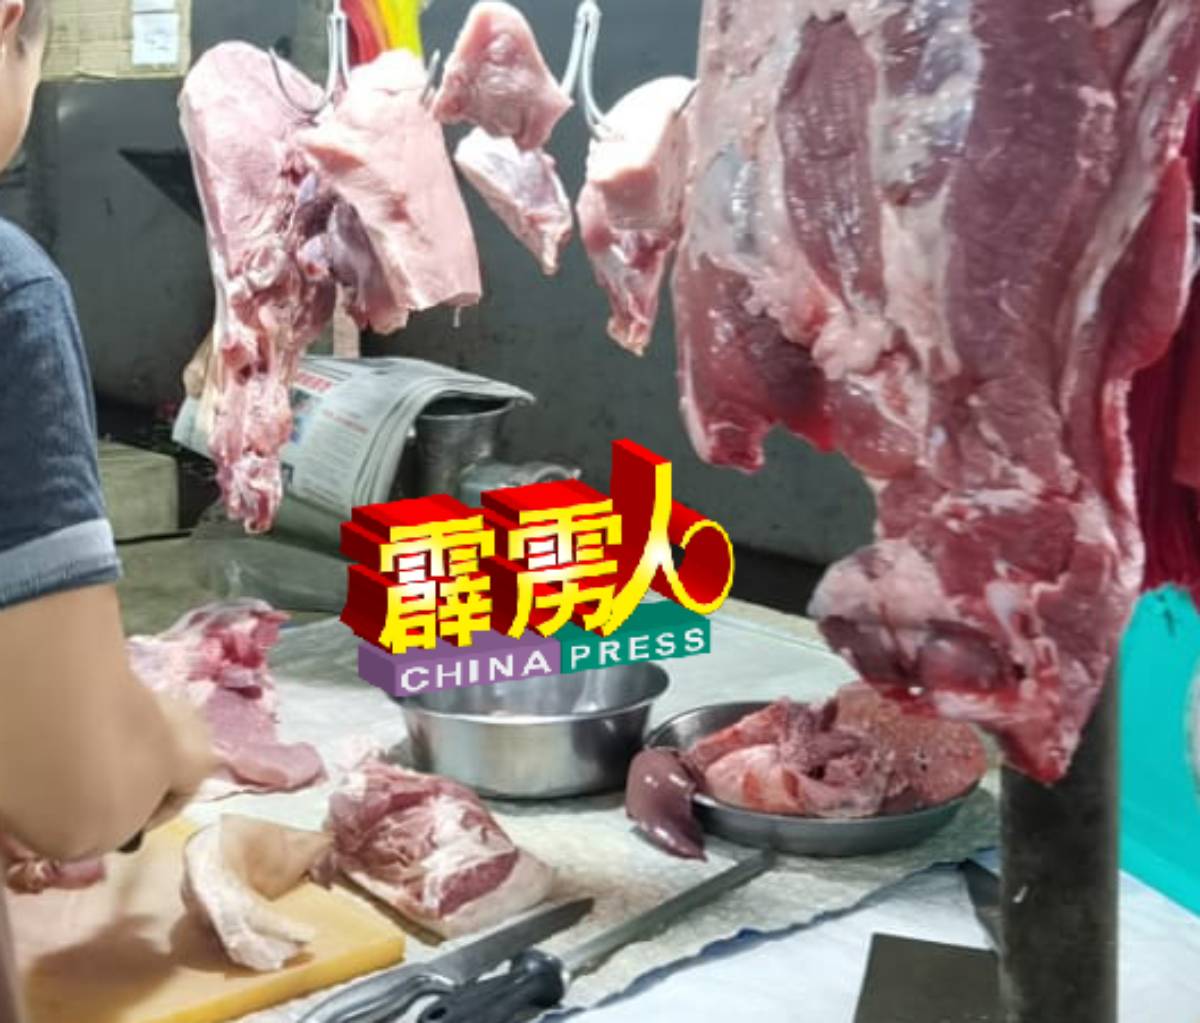 猪肉是华人新年期间是其中主要的食材之一。